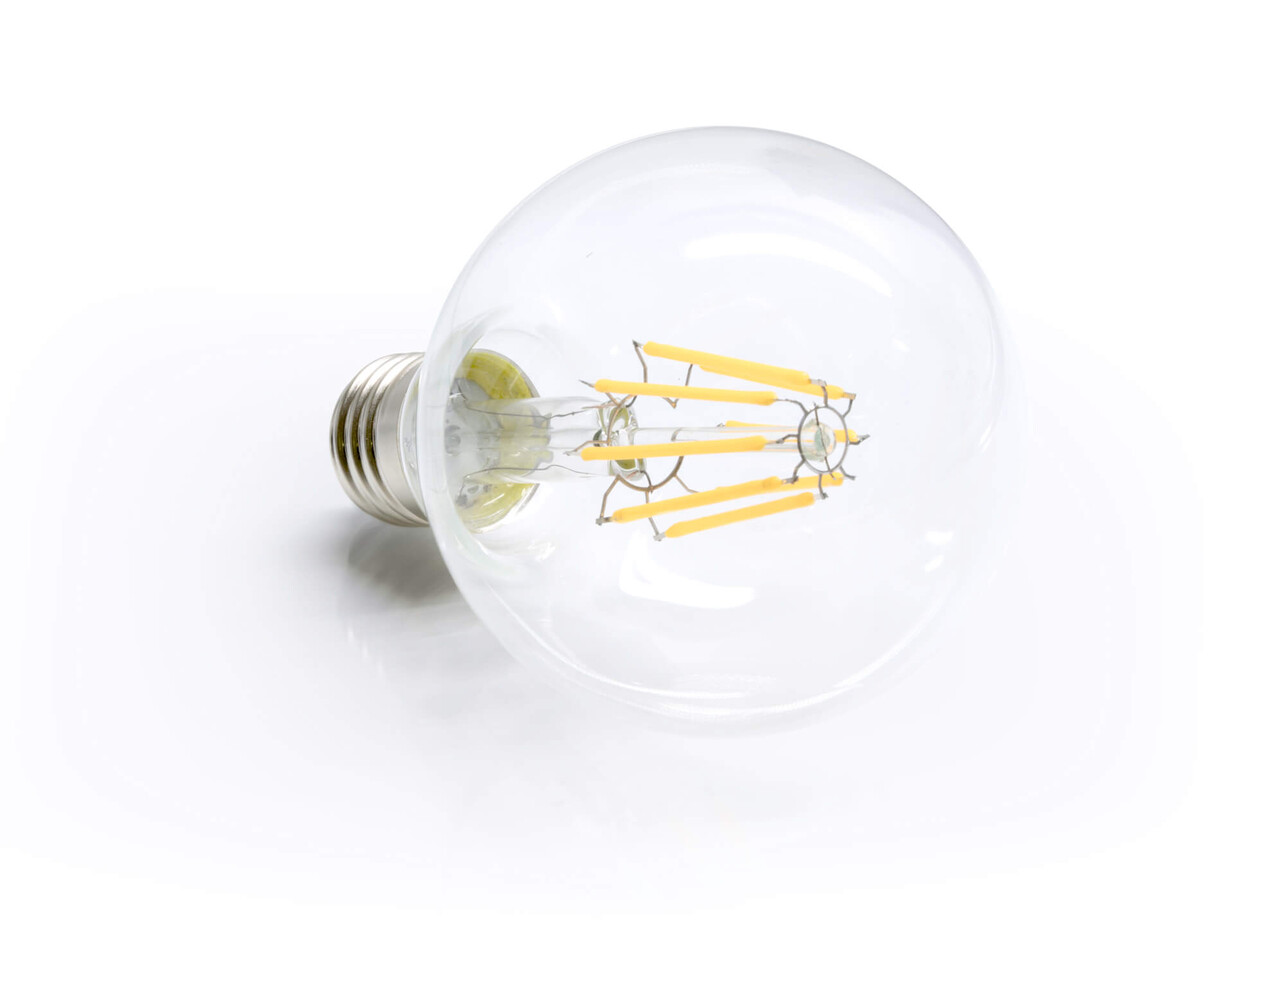 Hochwertiges LED Filament Leuchtmittel für ein helles und warmes Licht, passend für verschiedene Leuchten. LED Universum